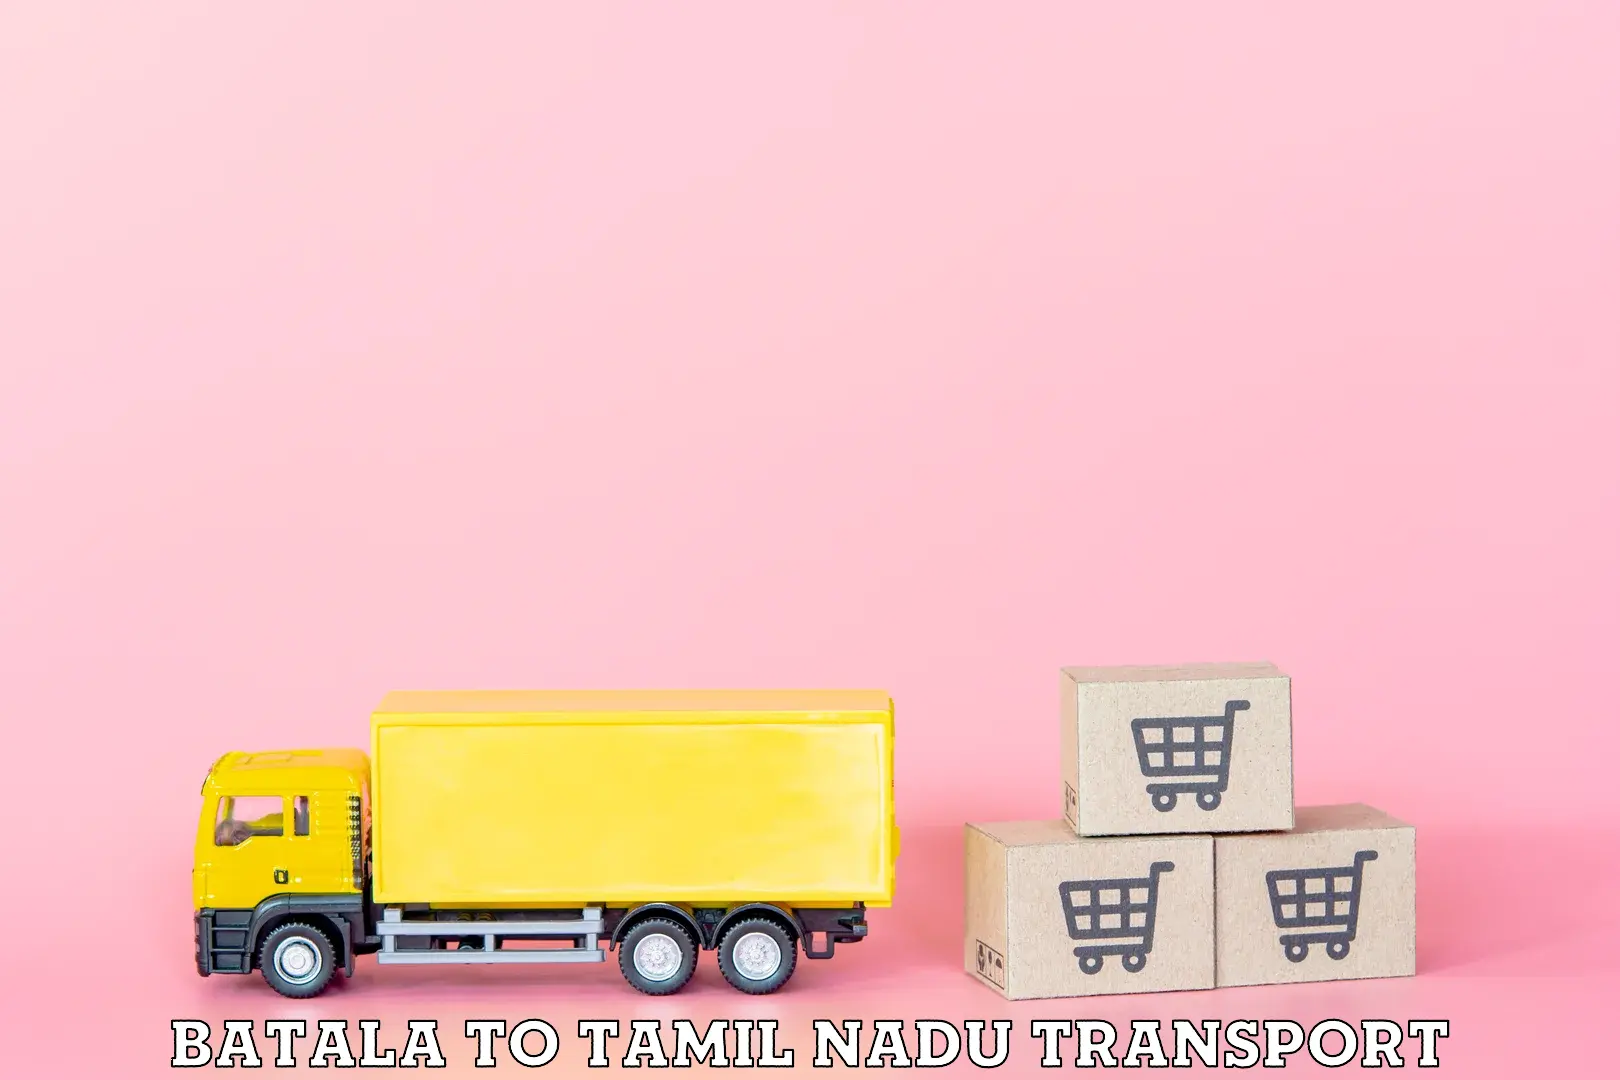 Daily transport service Batala to Thiruvadanai